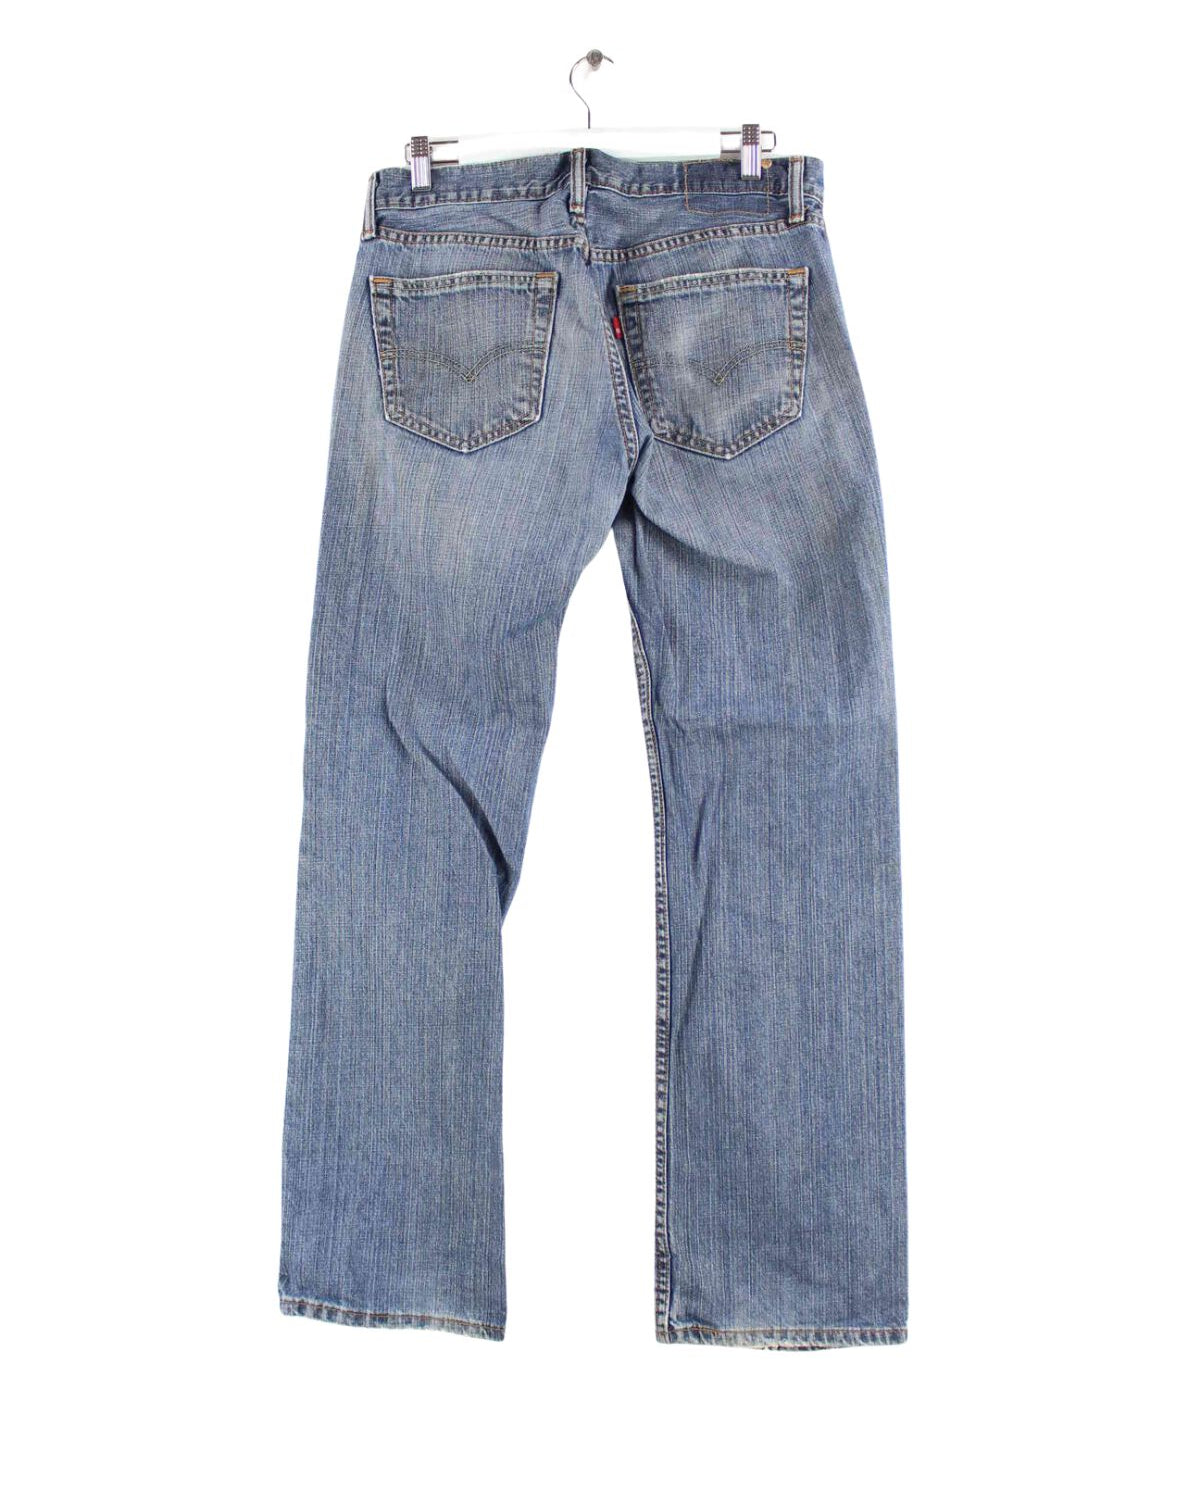 Levi's Jeans Blau W31 L32 (back image)